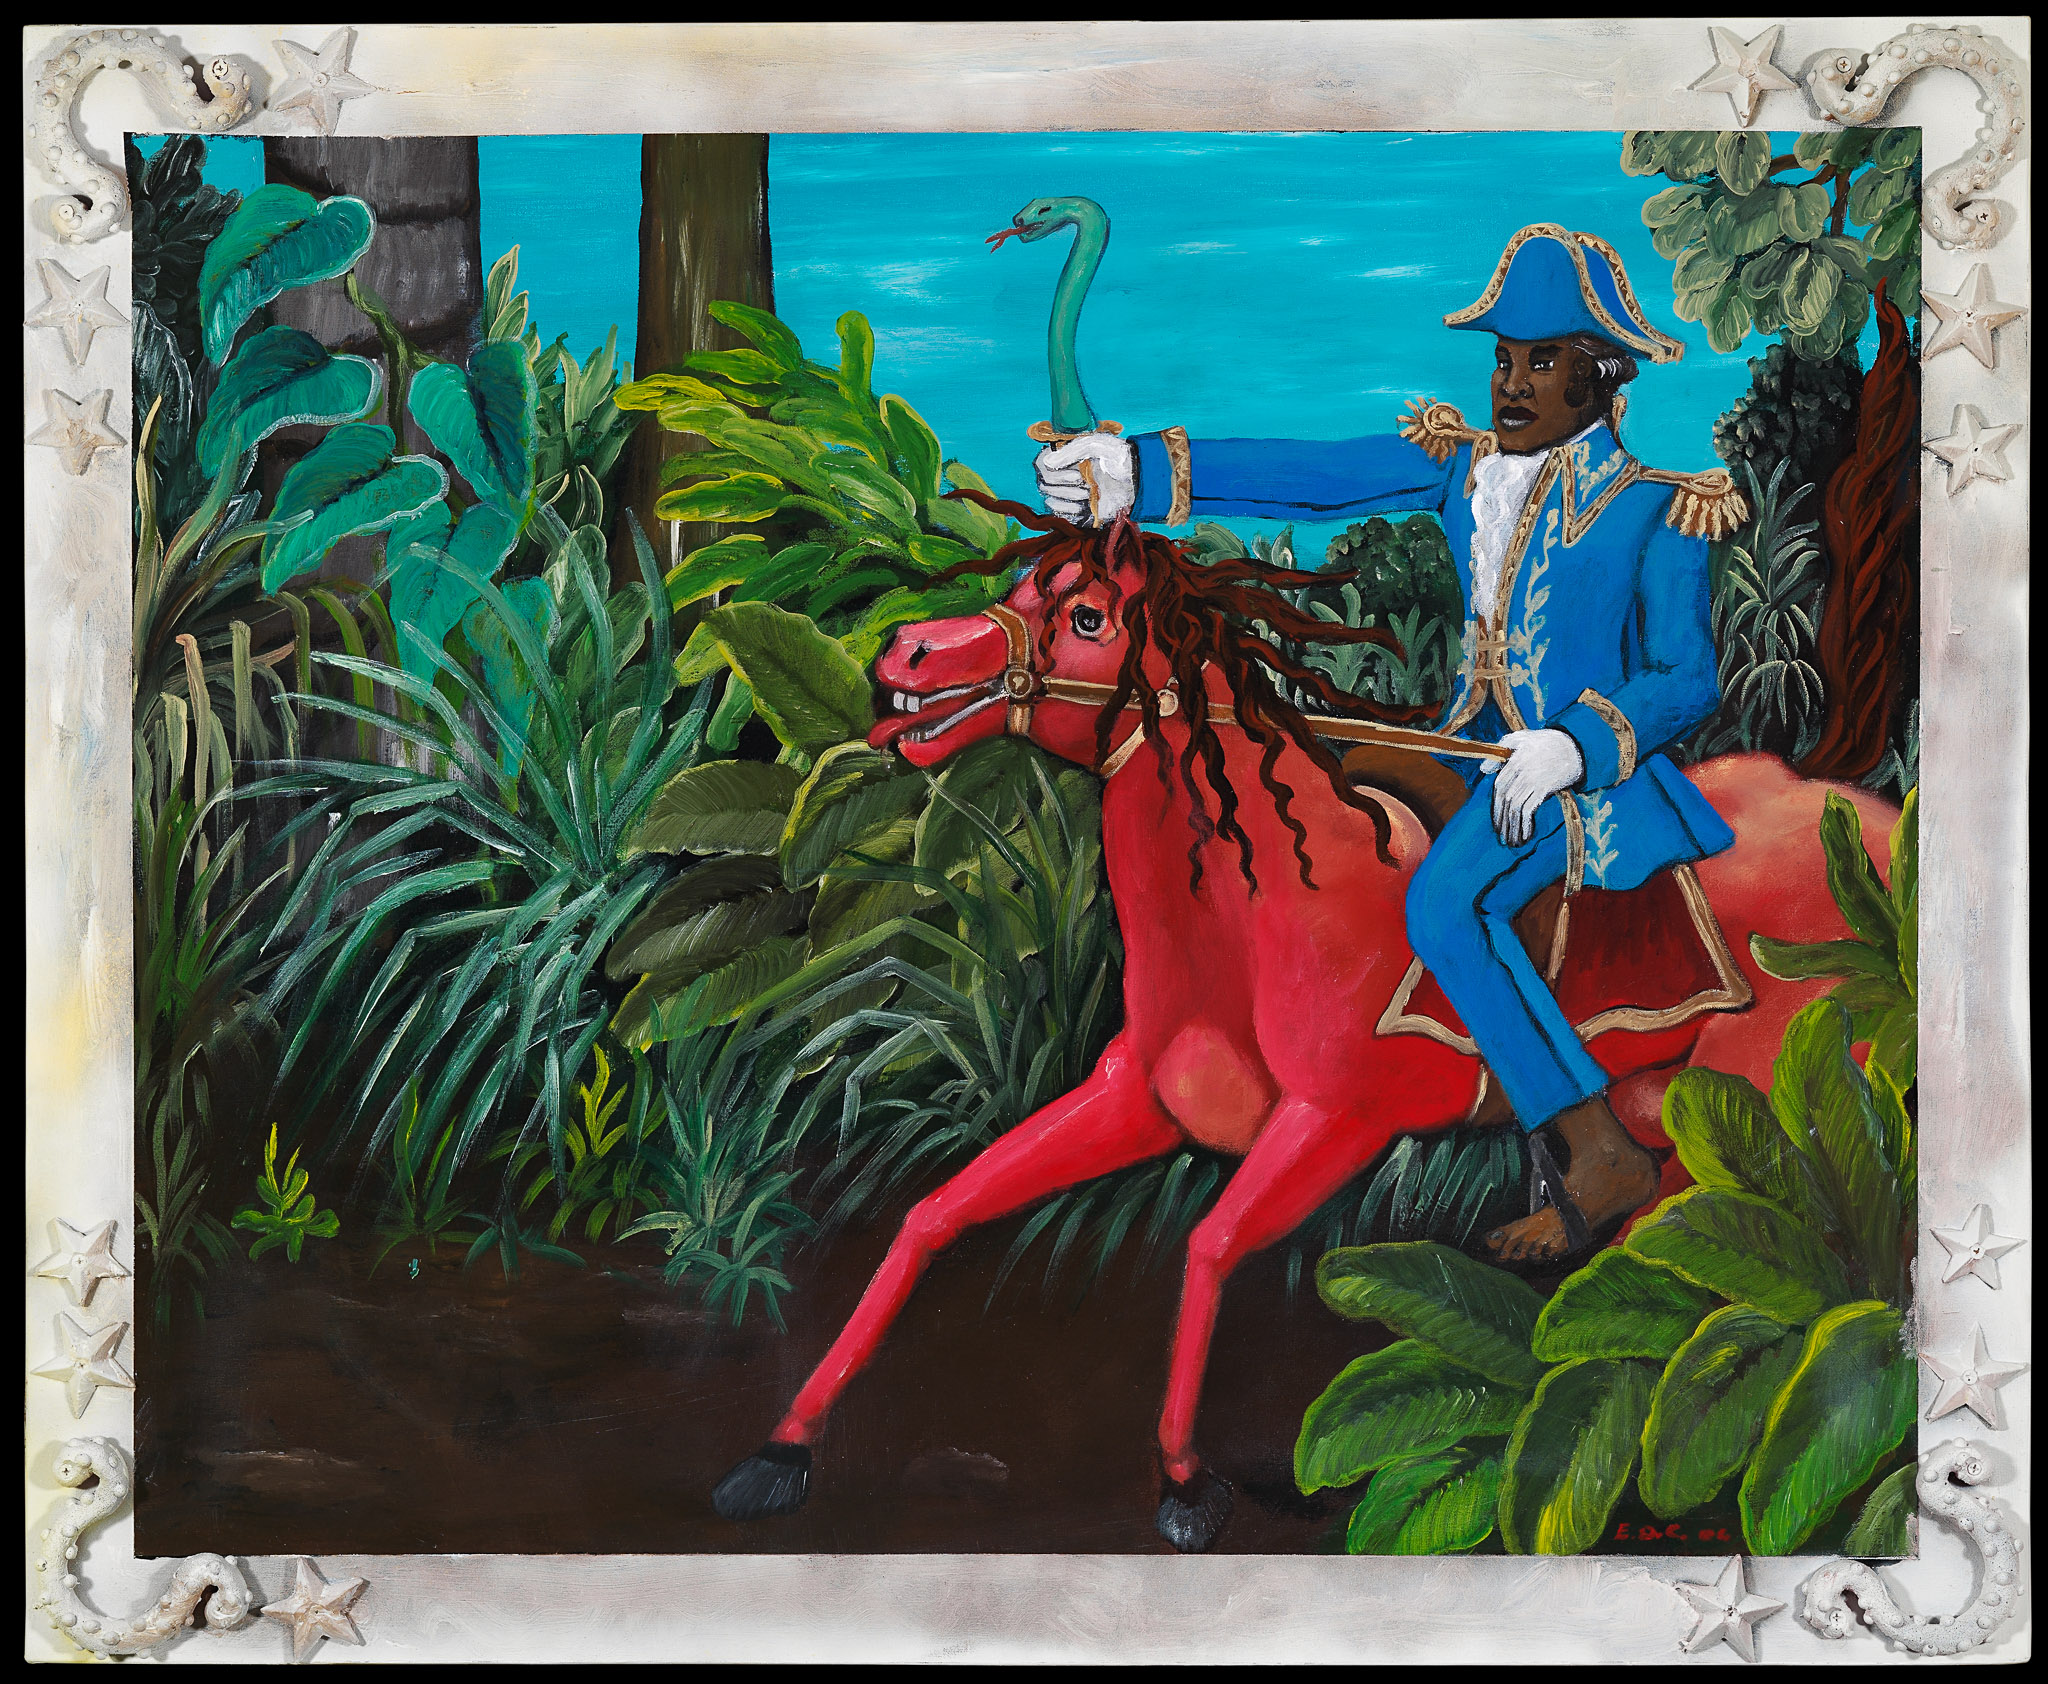 Toussaint Louverture, 2006